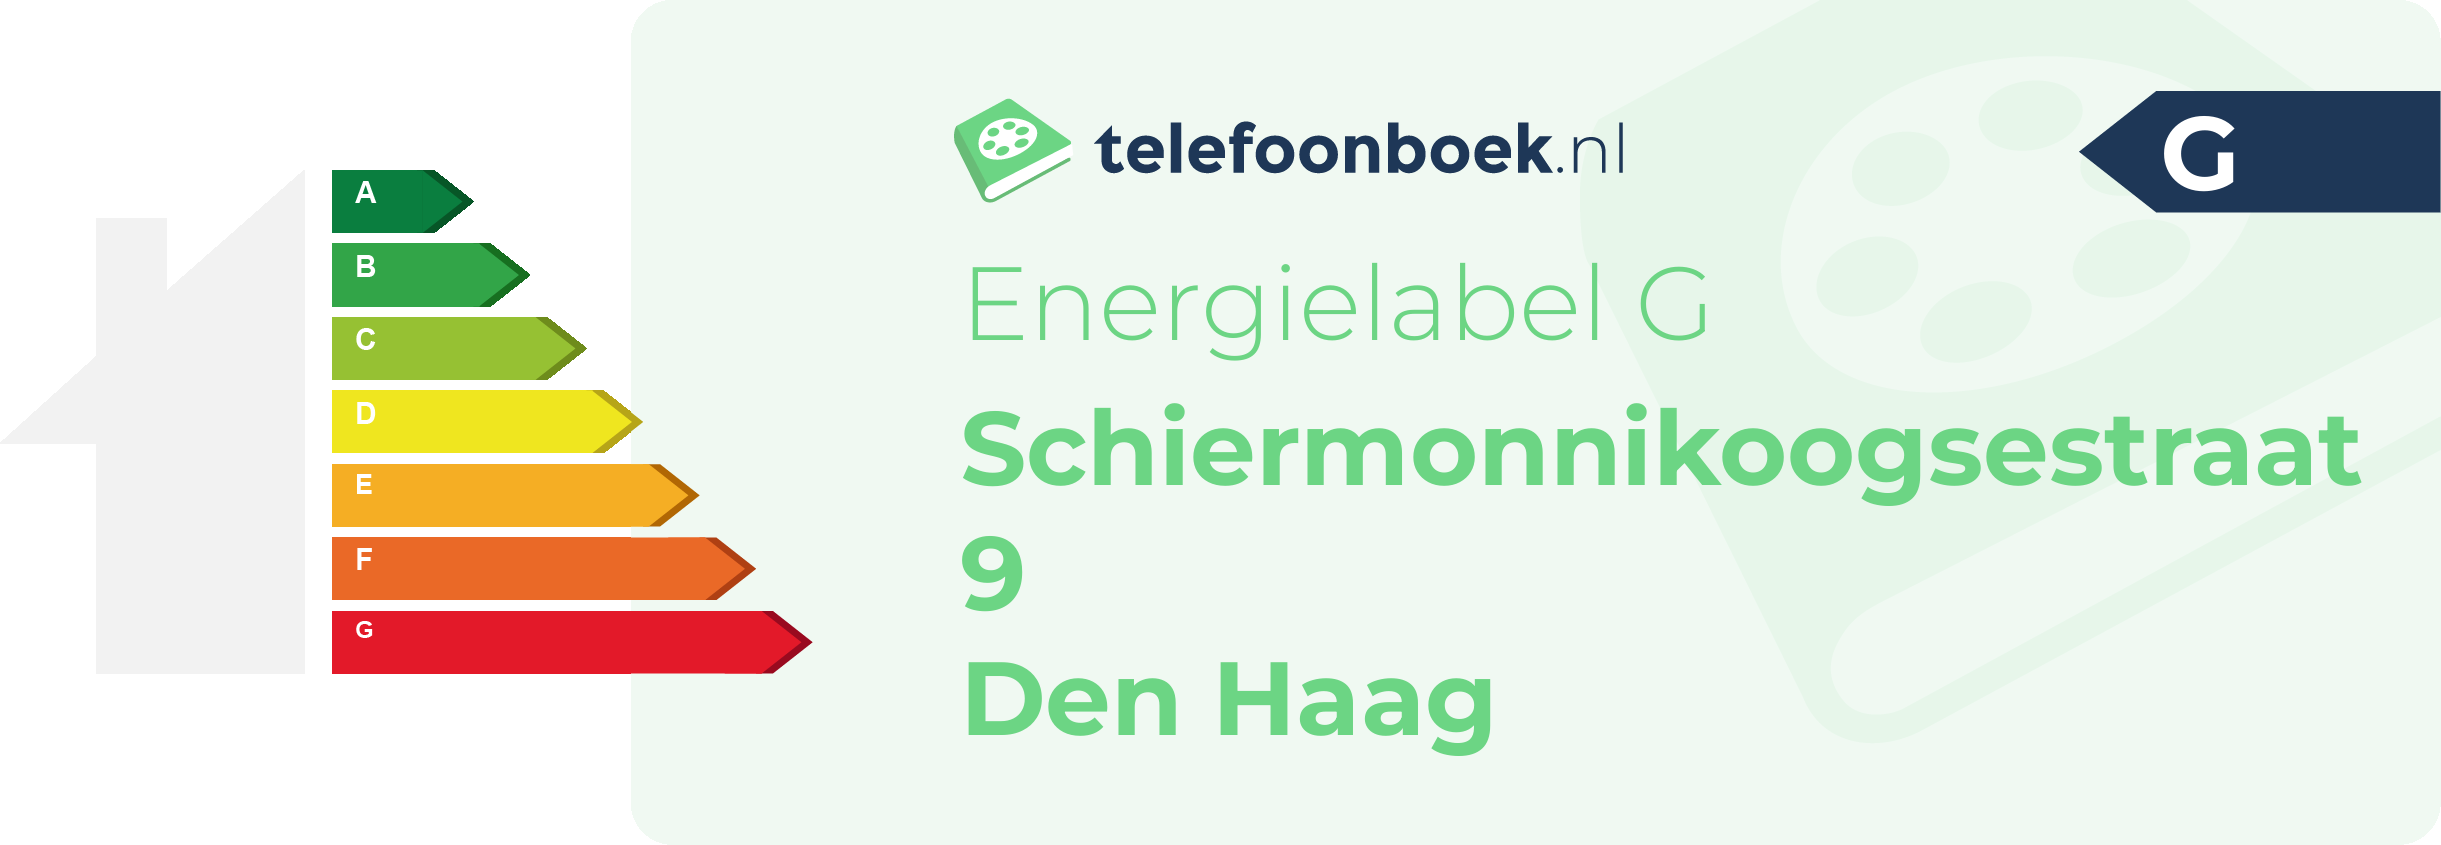 Energielabel Schiermonnikoogsestraat 9 Den Haag